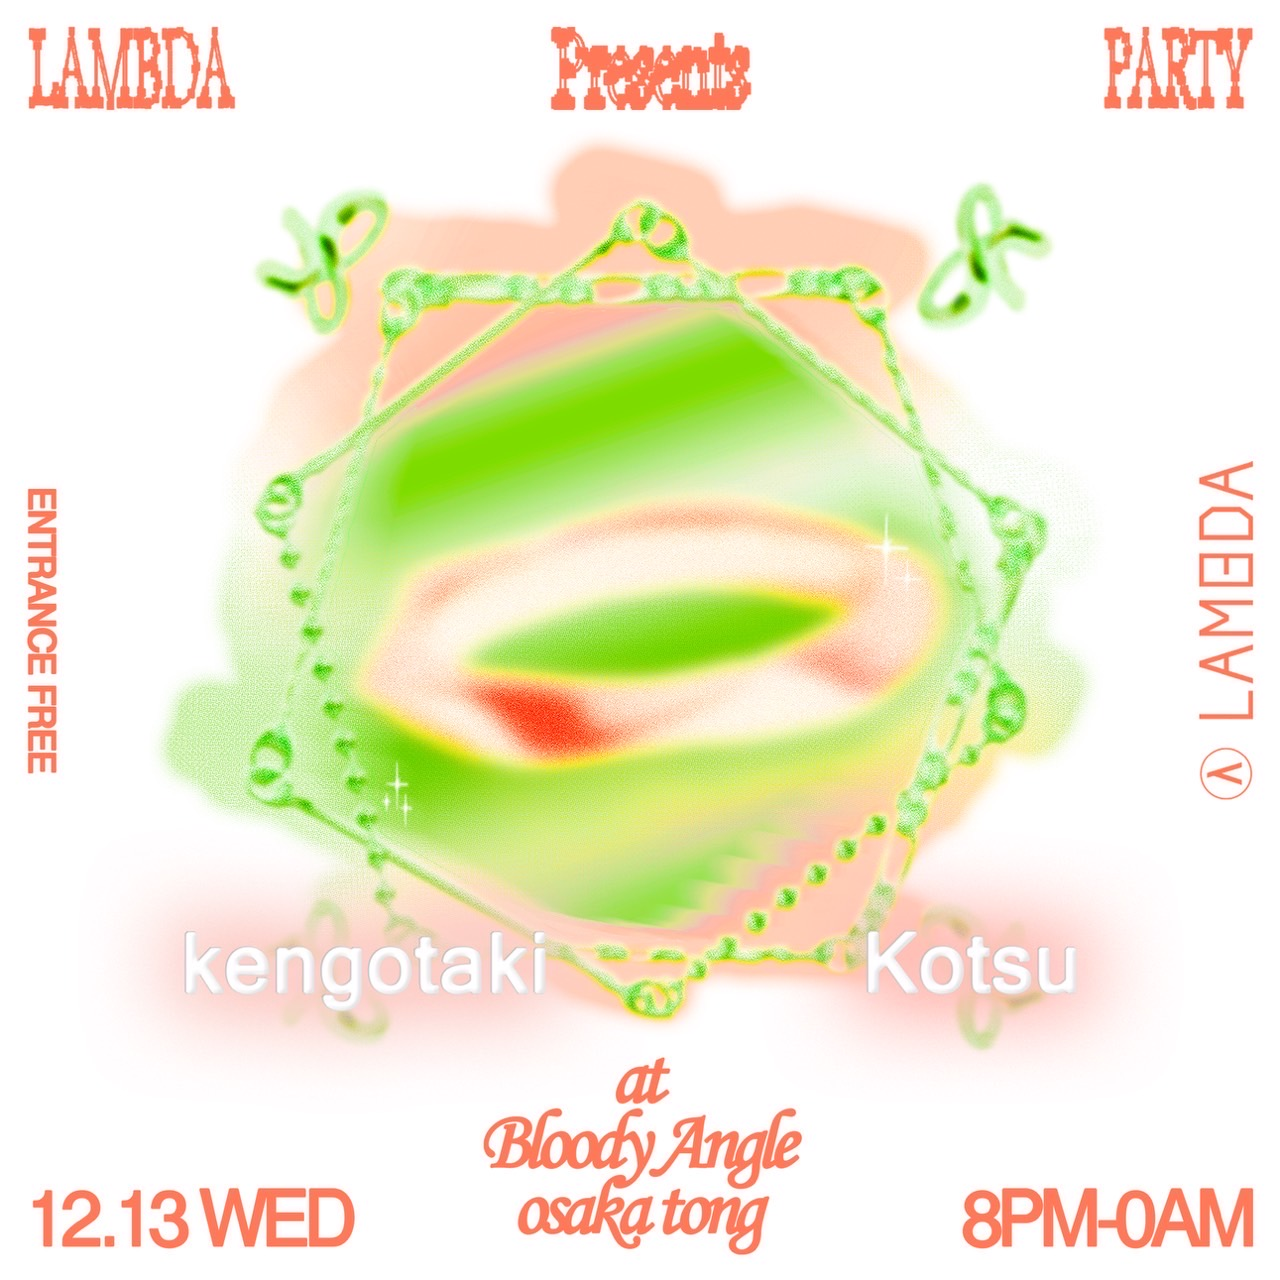 【LAMBDA PARTY#02】at Bloody Angle Osaka Tong